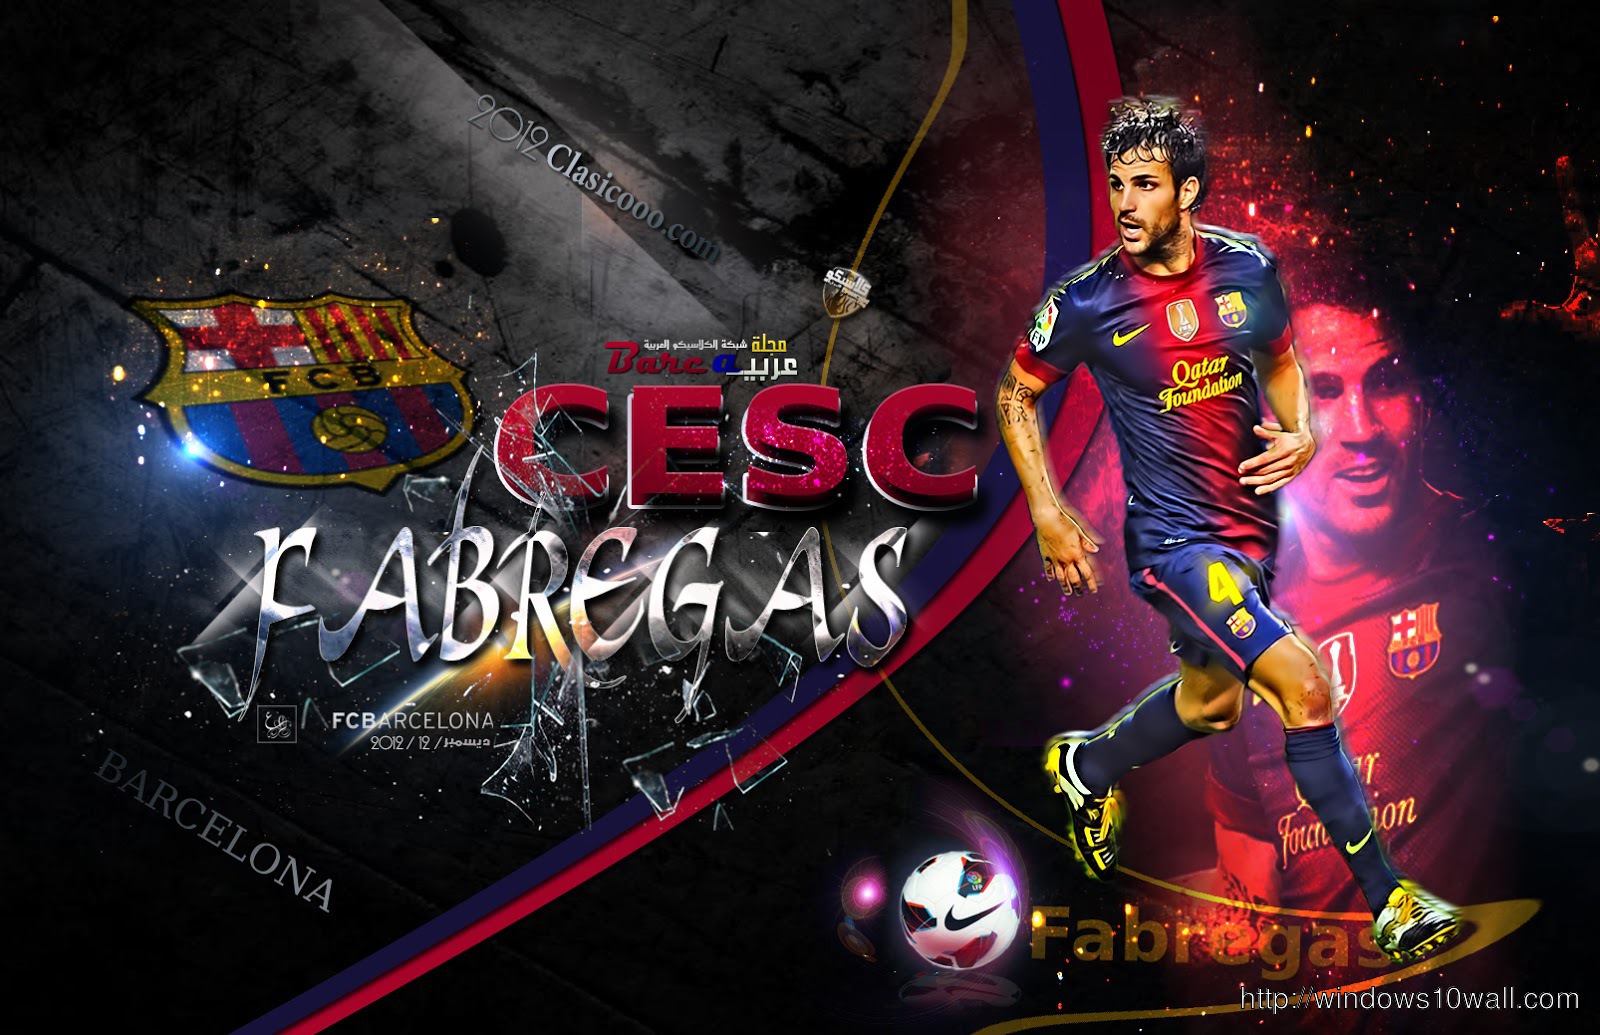 Cesc Fabregas New HD 2014 Background Wallpaper